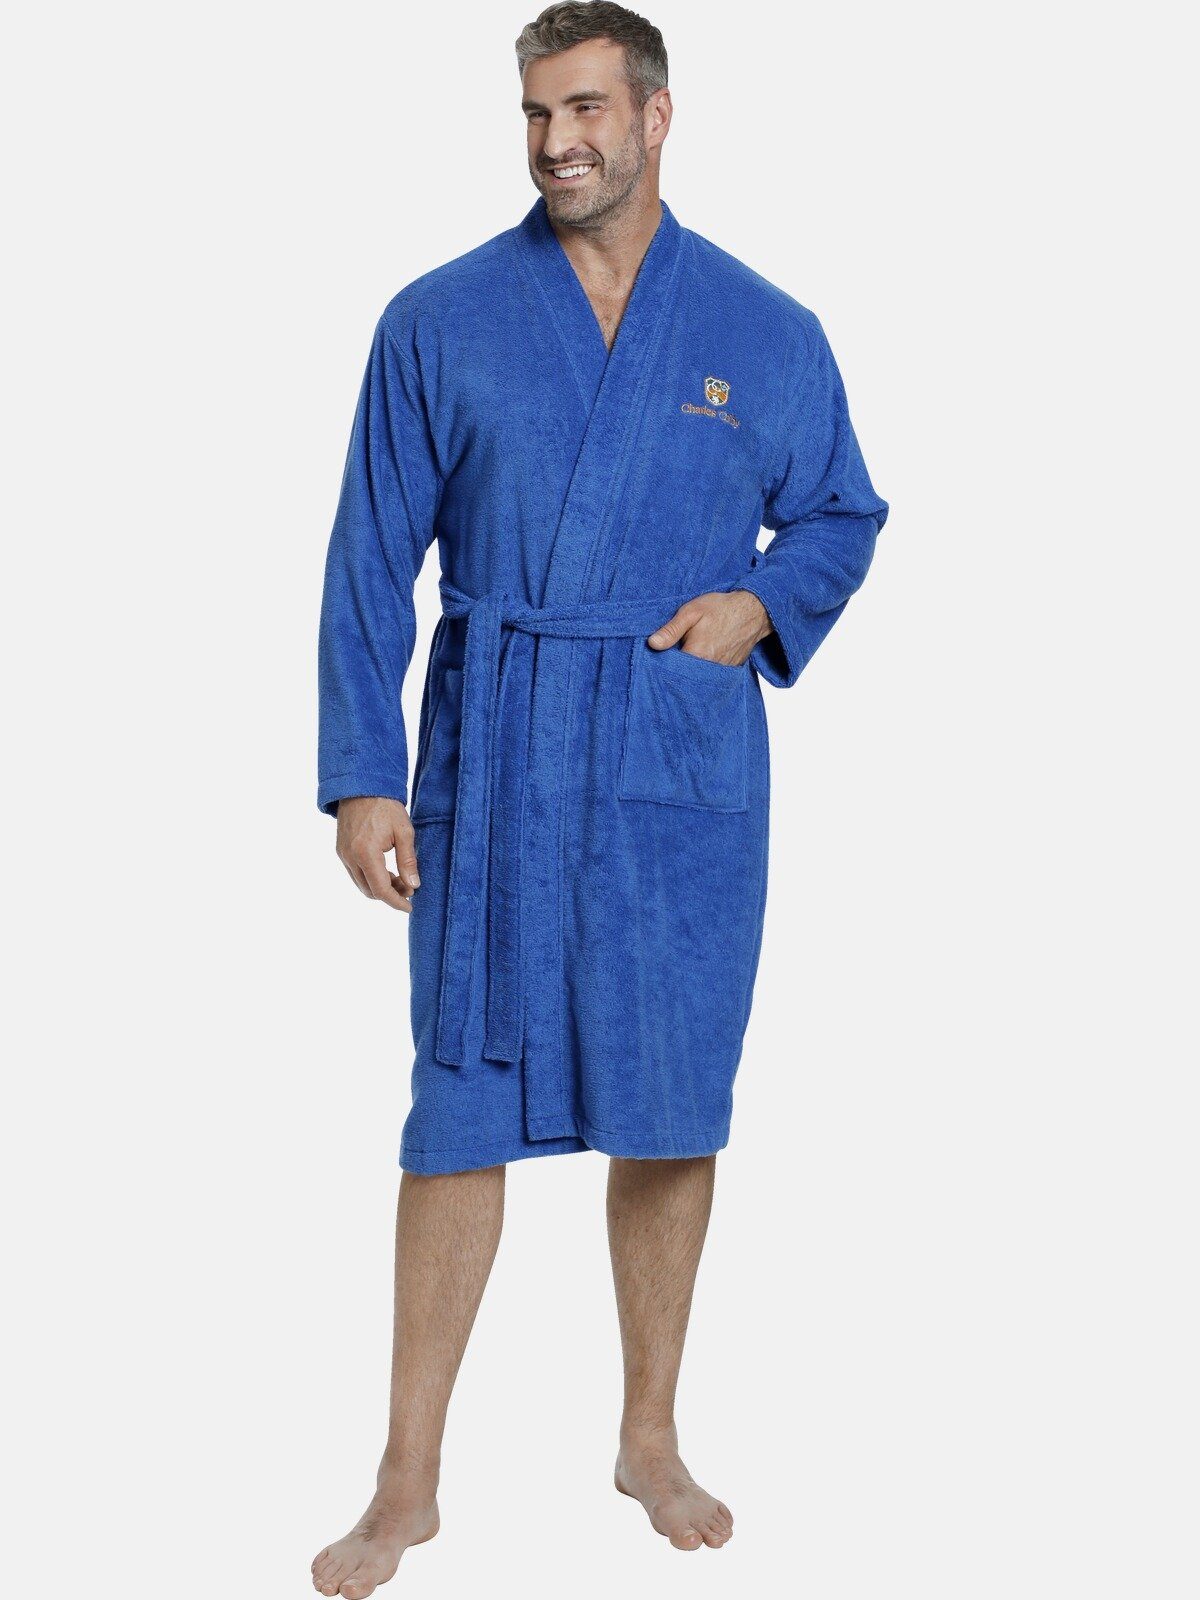 Charles Colby Bademantel LORD CURET, Langform, Baumwolle, Kimono-Kragen, Gürtel, aus angenehm weichem Frottier blau